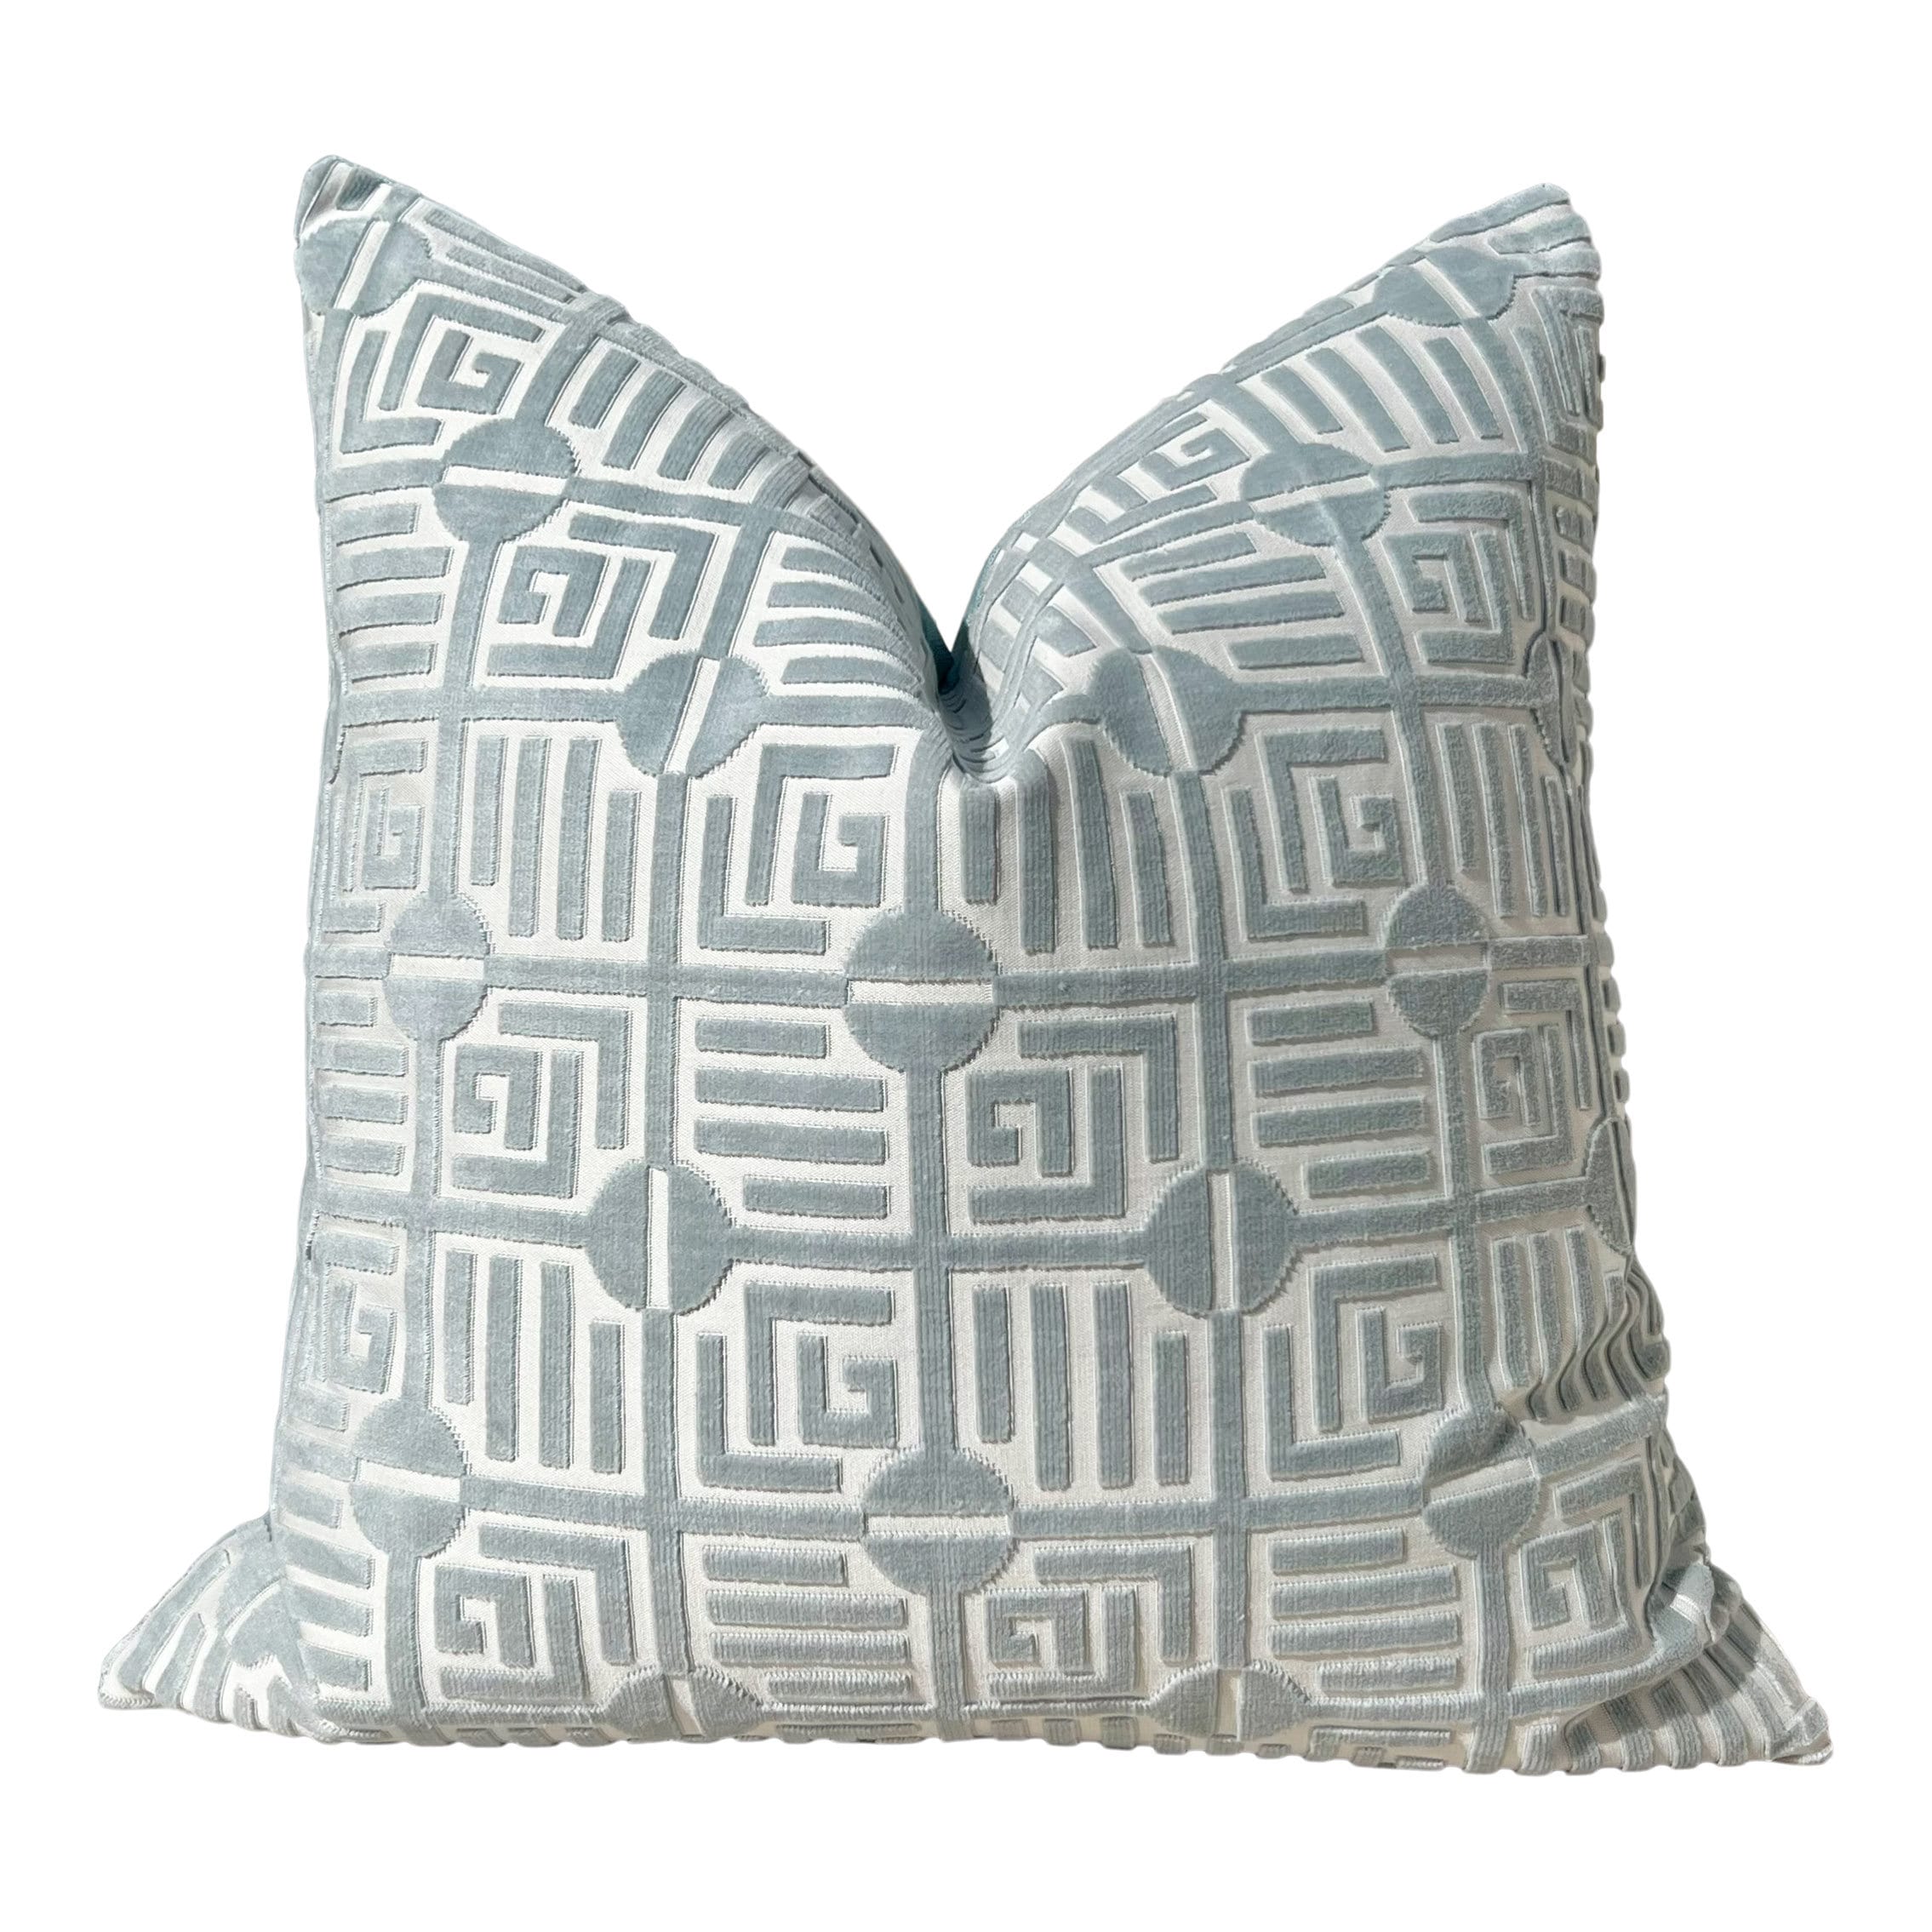 Thibaut Labyrinth Velvet Pillow in Mist. High End Pillows, Designer Raised Velvet Pillows, Geometric Velvet Pillows in Aqua, Euro Sham Cover